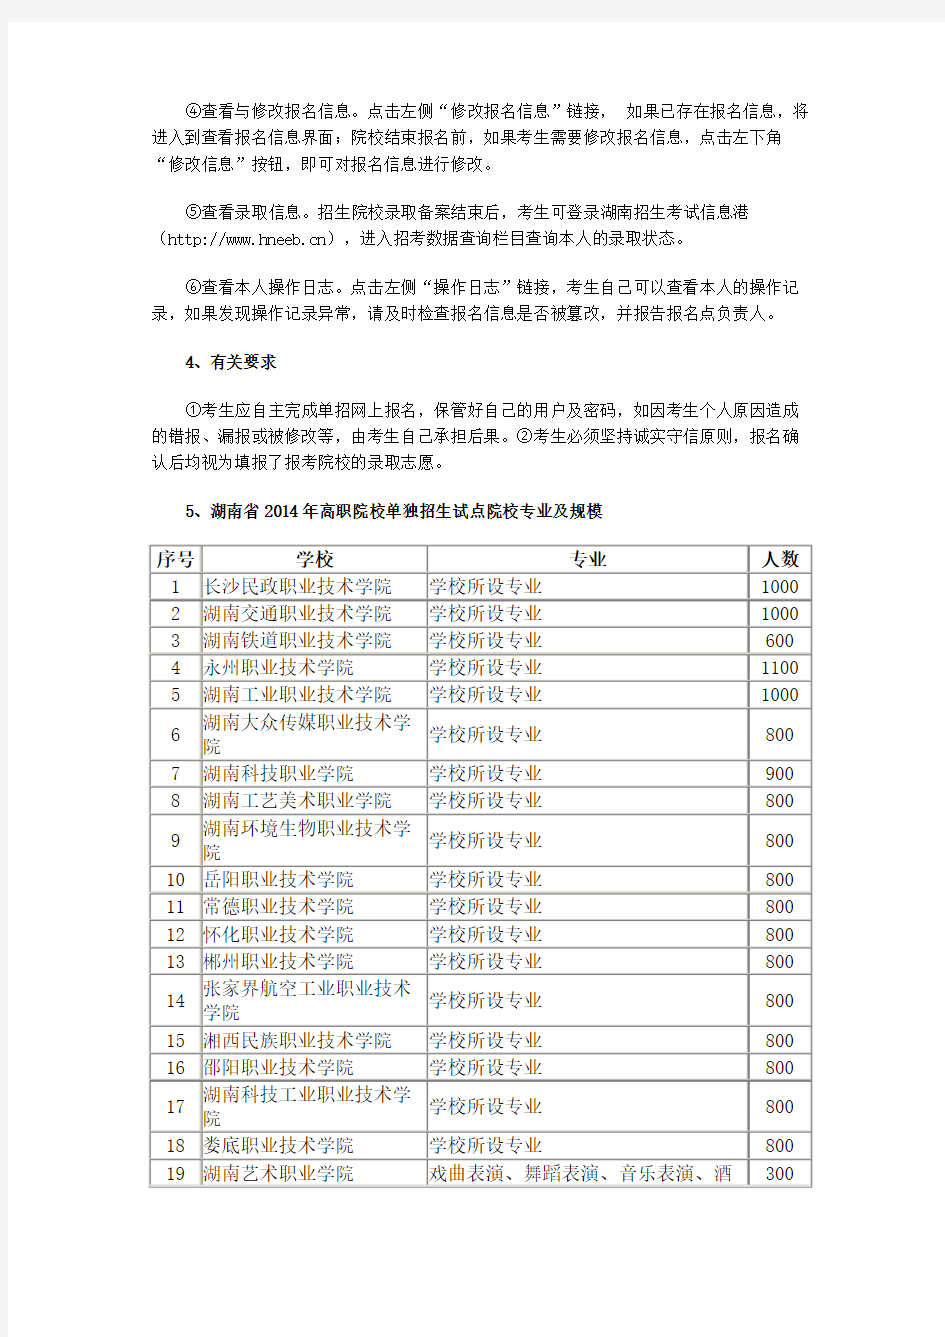 2015年湖南省高职院校单独招生报考指南